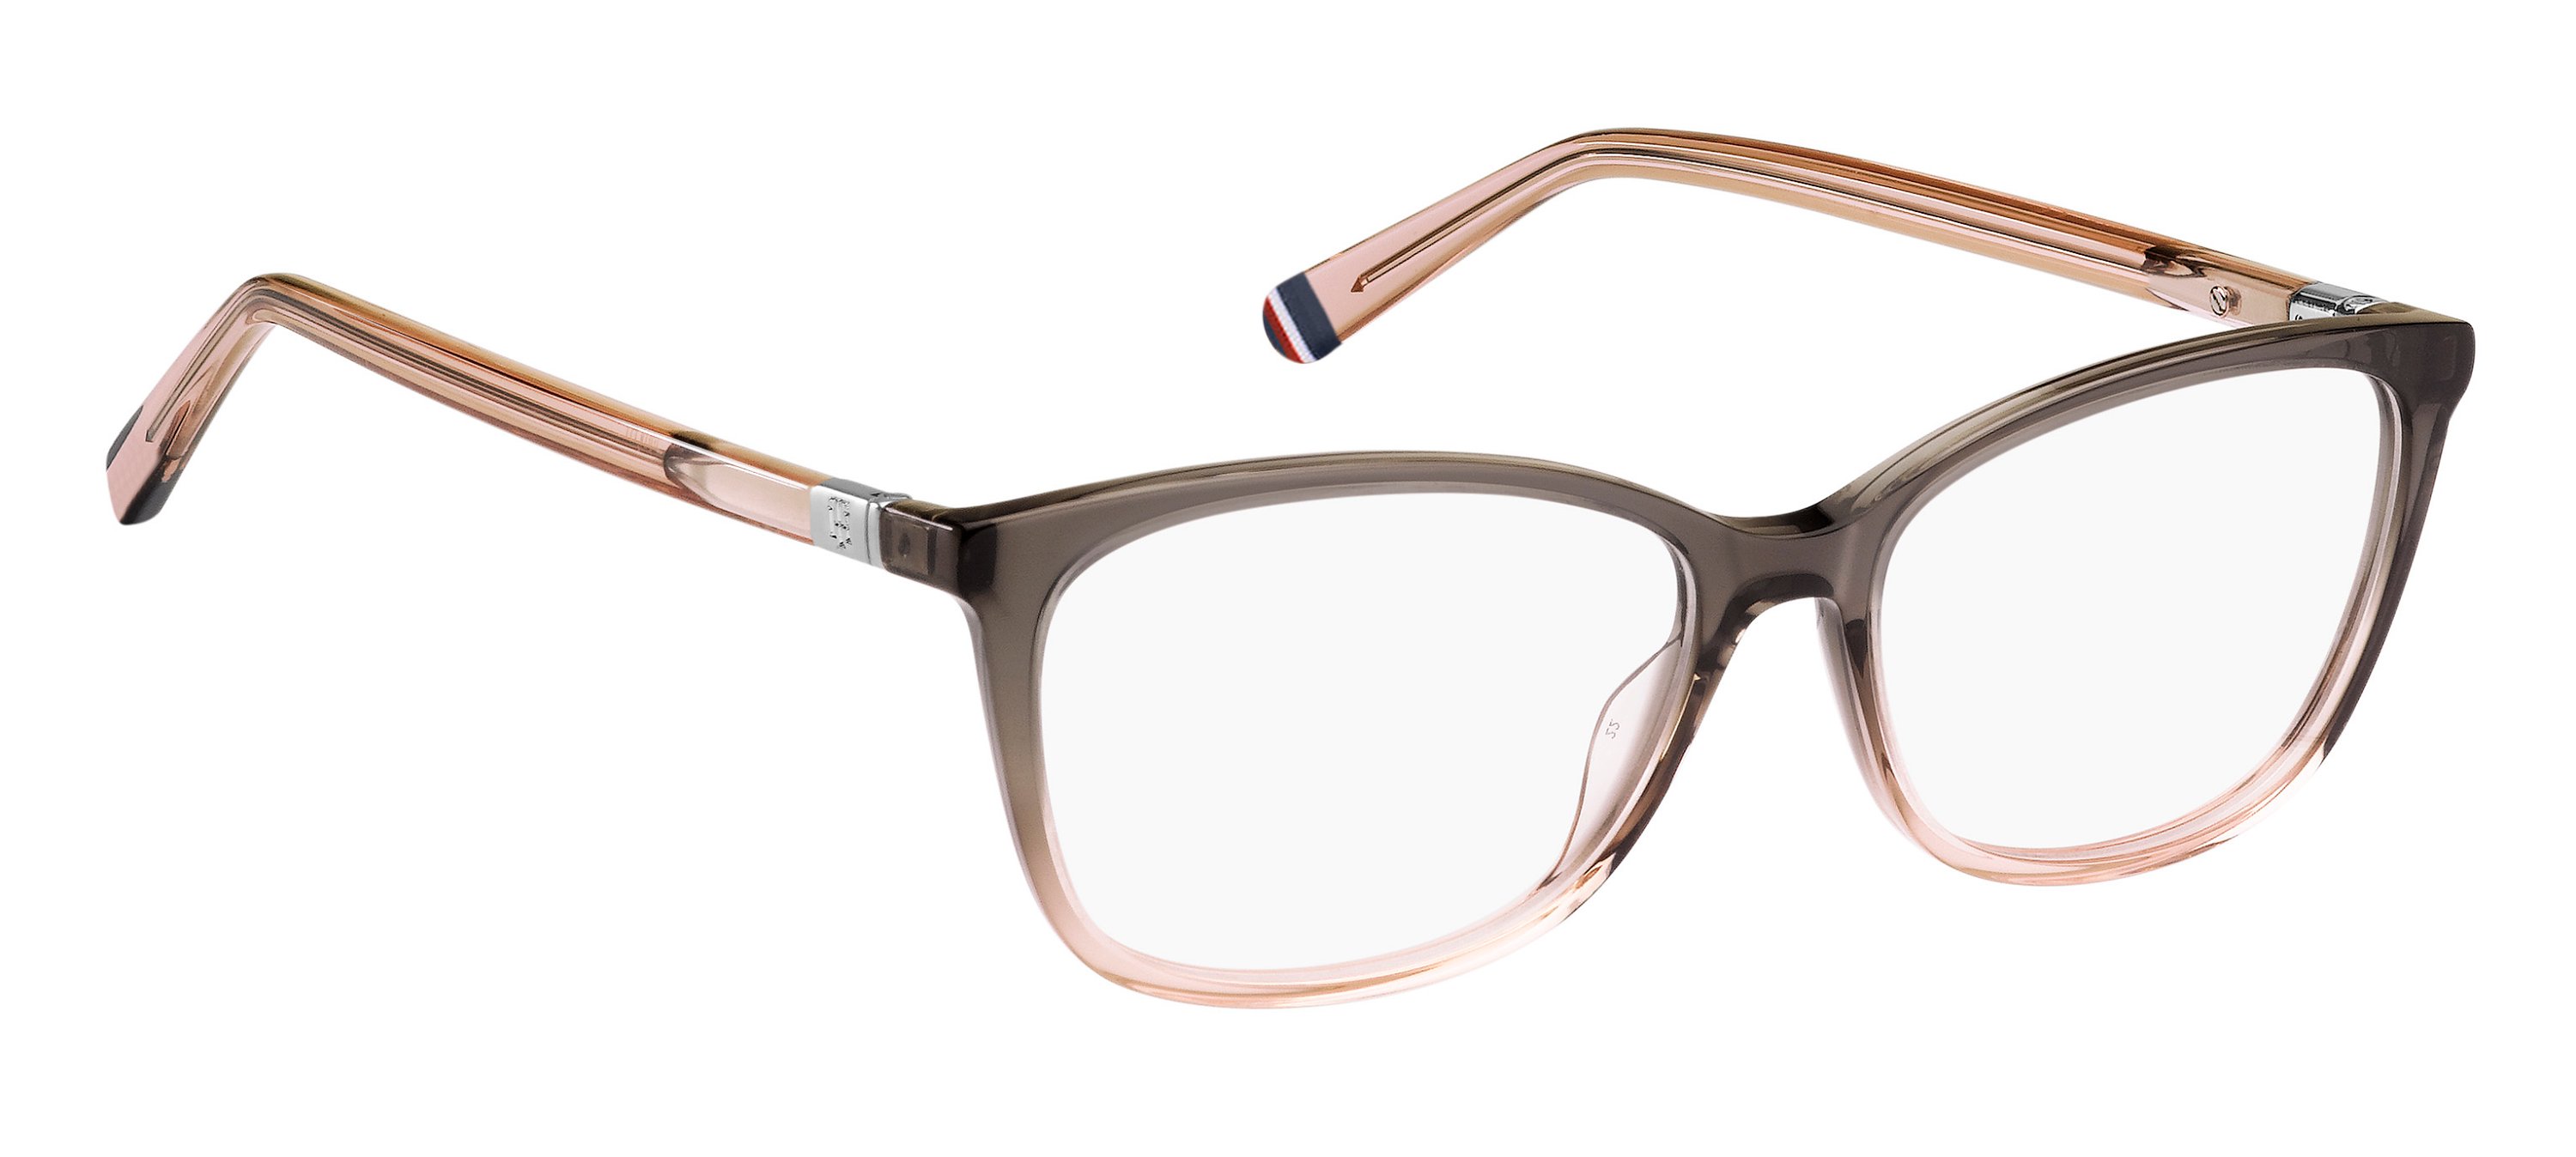 Tommy Hilfiger Brille TH1965 2M0 54 grau